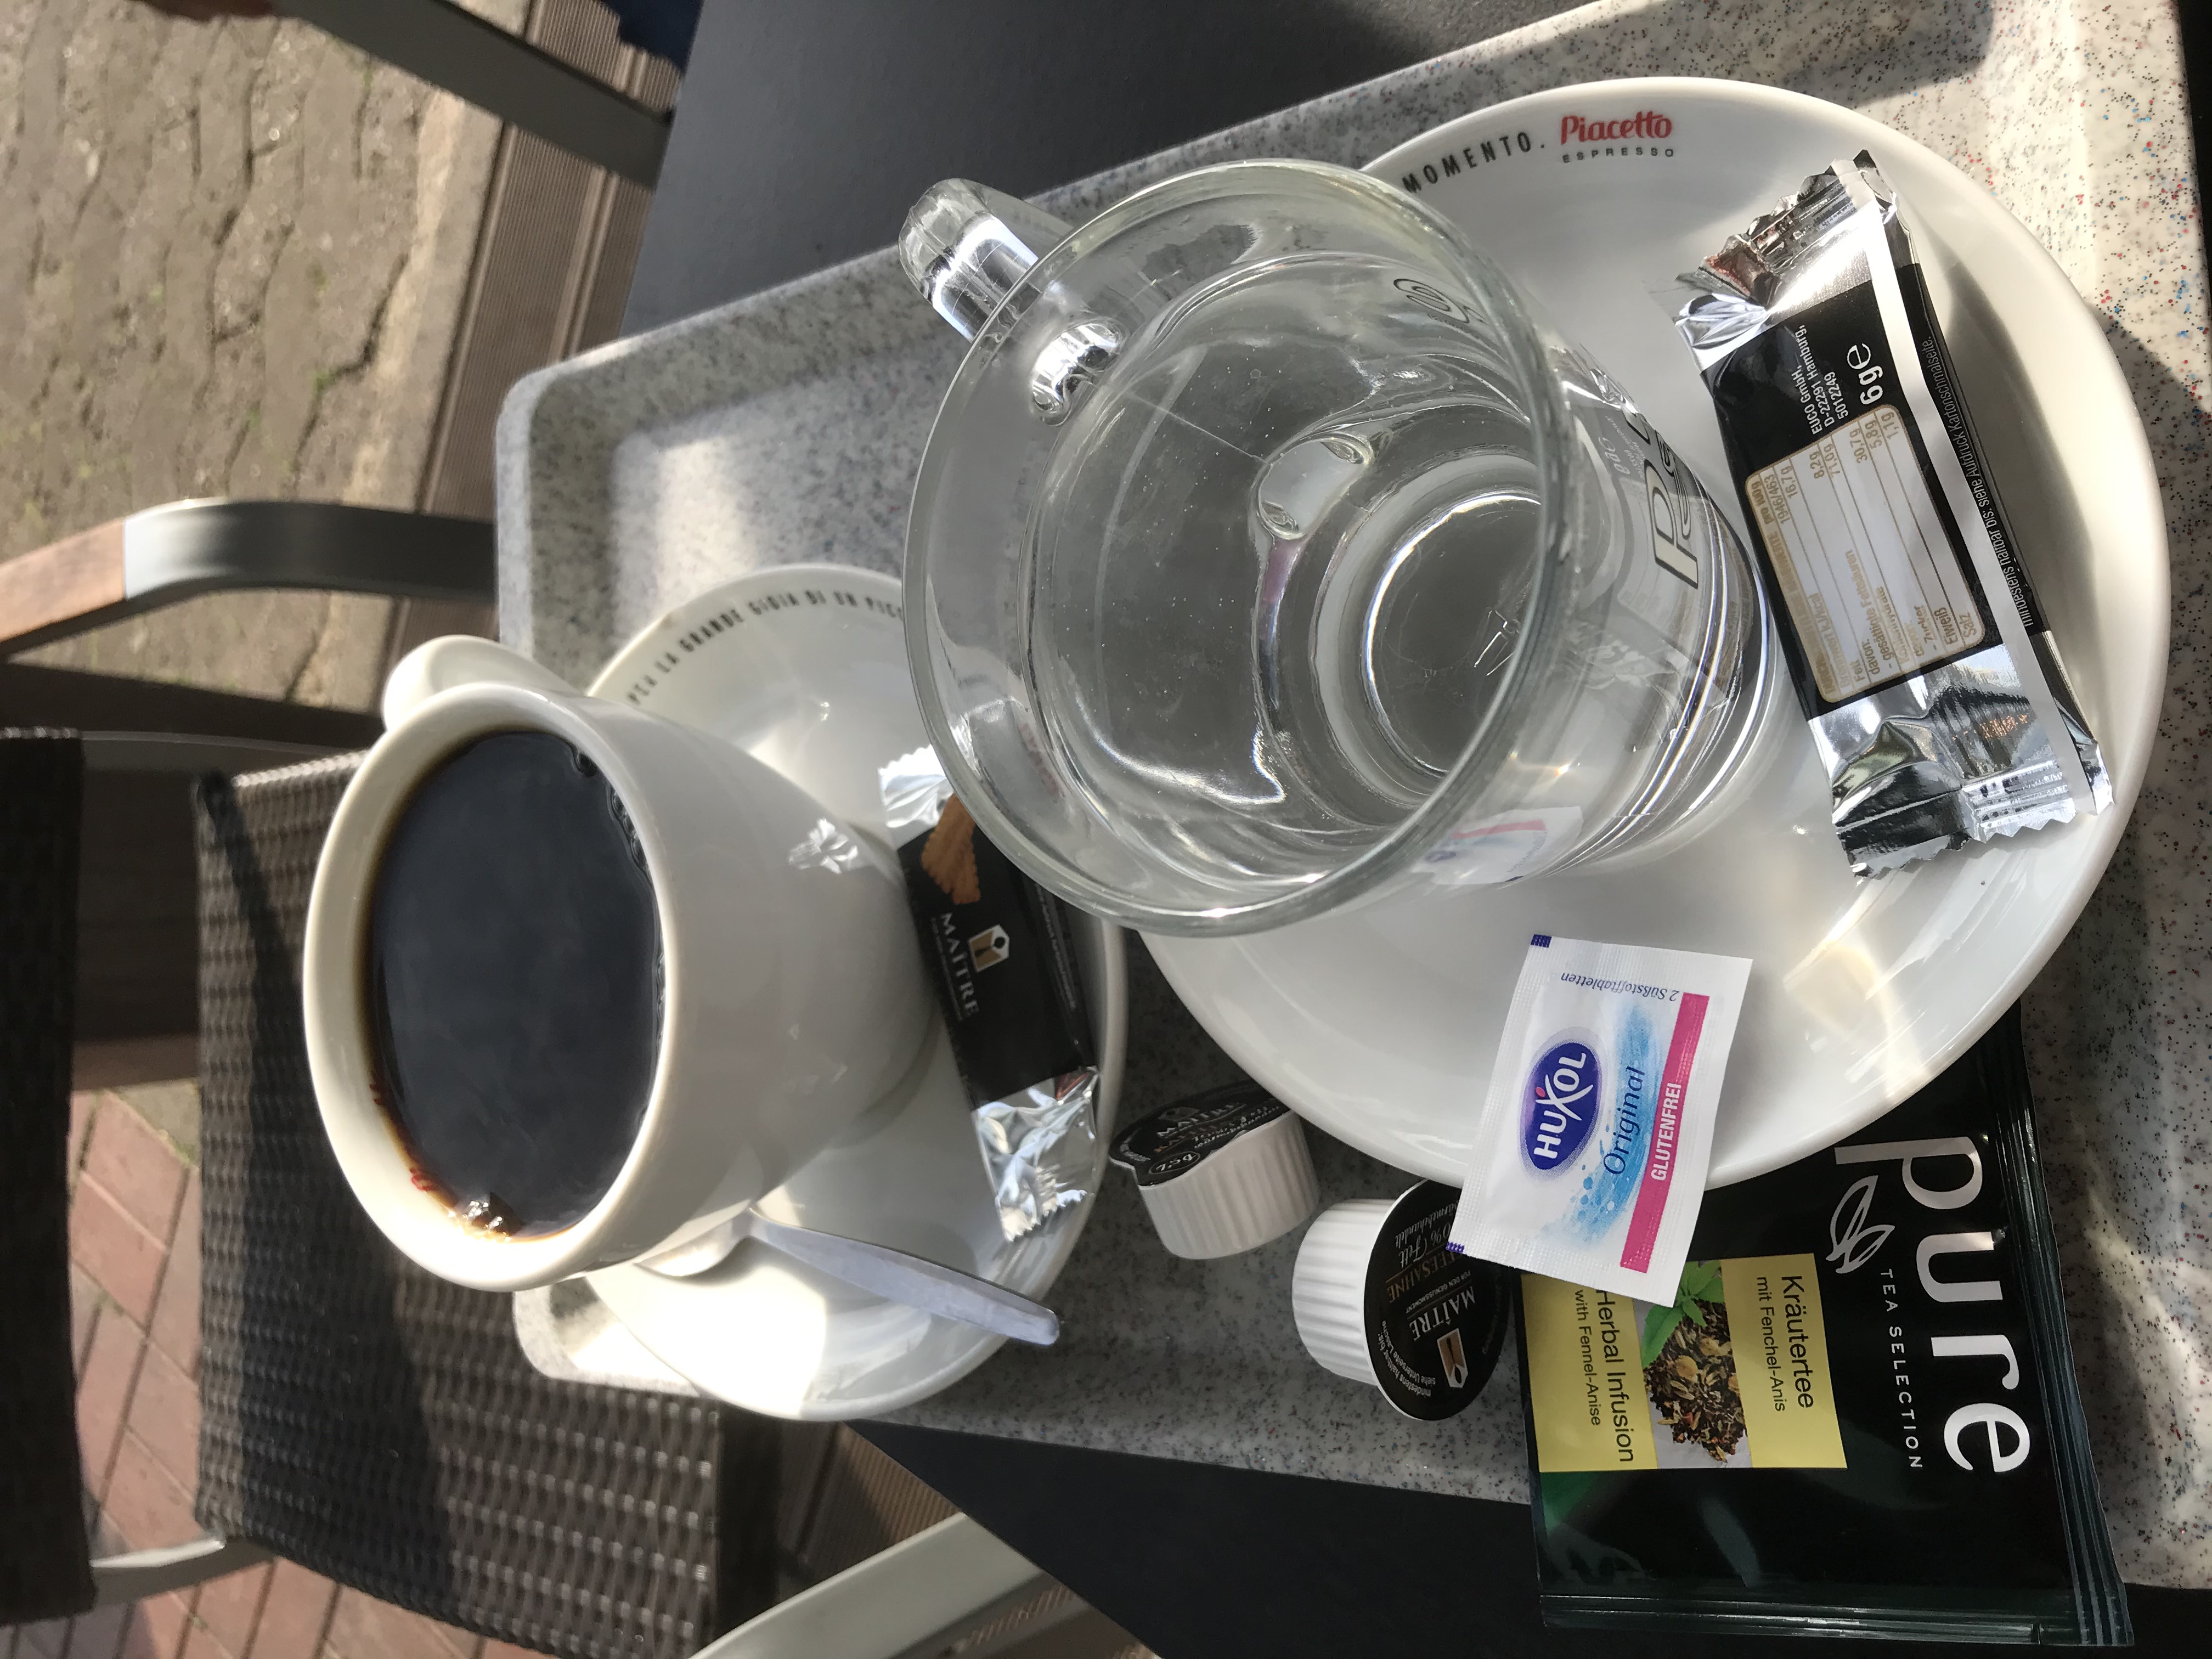 Ein Tee und ein Kaffee - 3,40 €